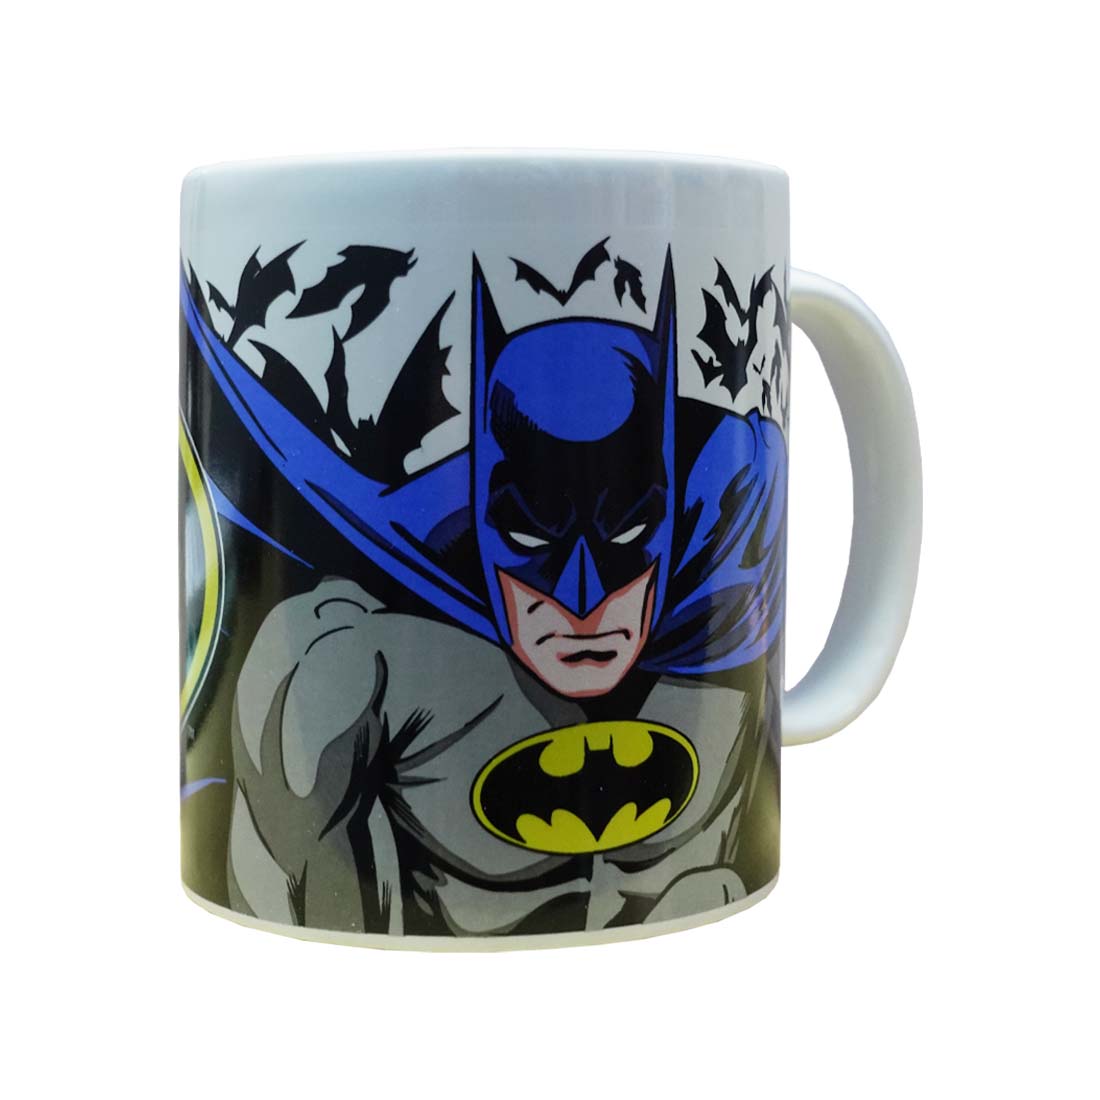 Batman Ceramic Mug - كأس - Store 974 | ستور ٩٧٤